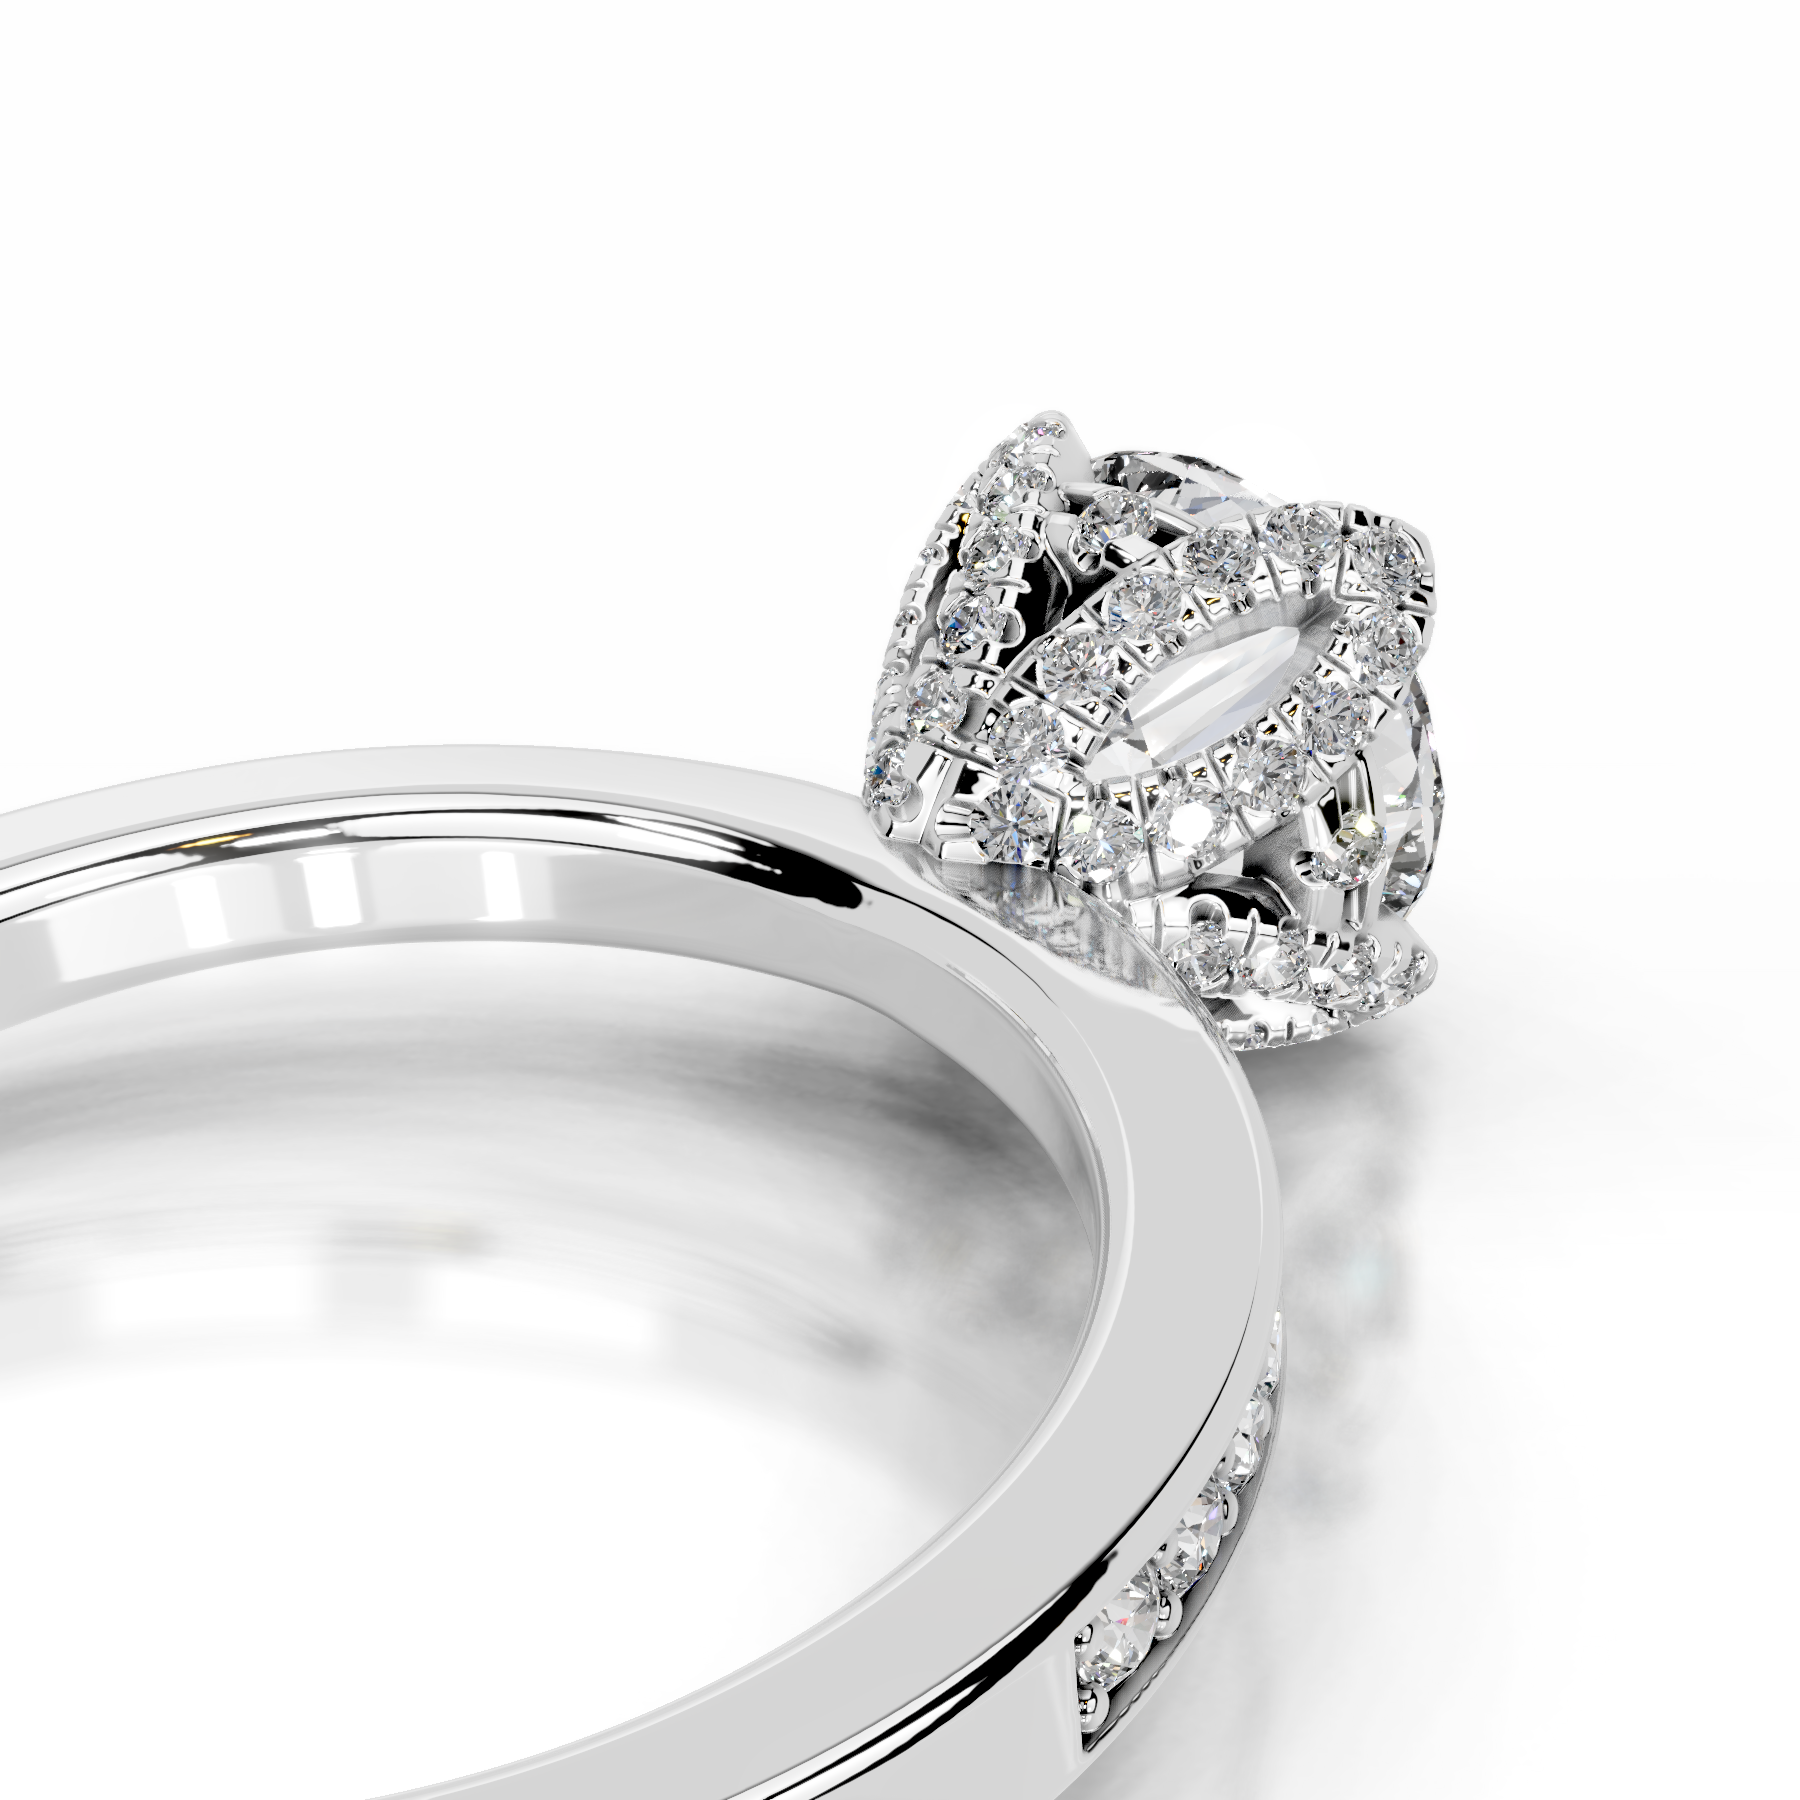 Daria Diamond Engagement Ring   (1.85 Carat) -Platinum